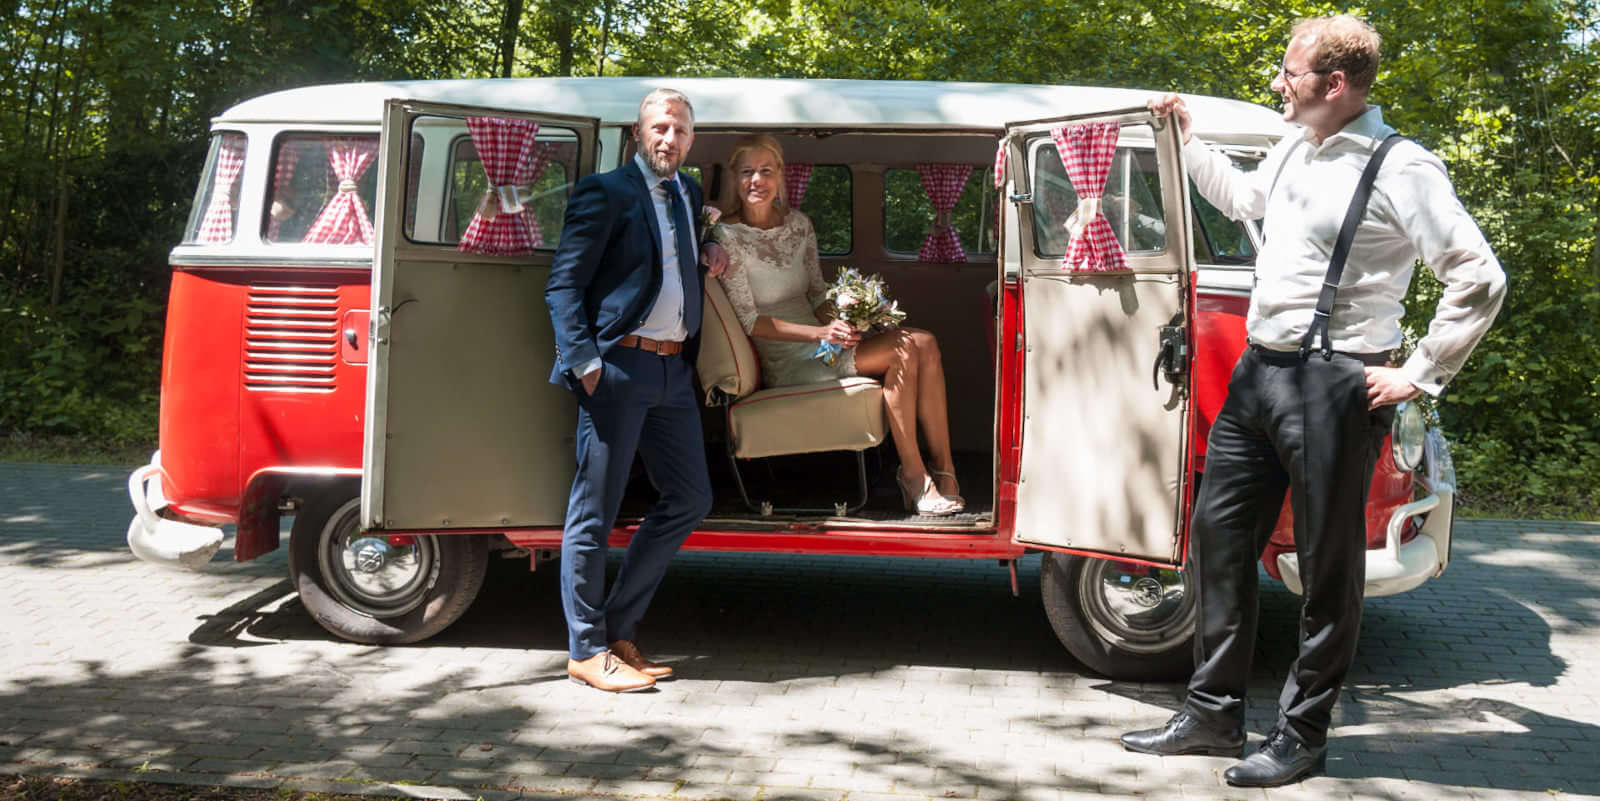 Vintage Weddingcar - Dein Hochzeitsauto